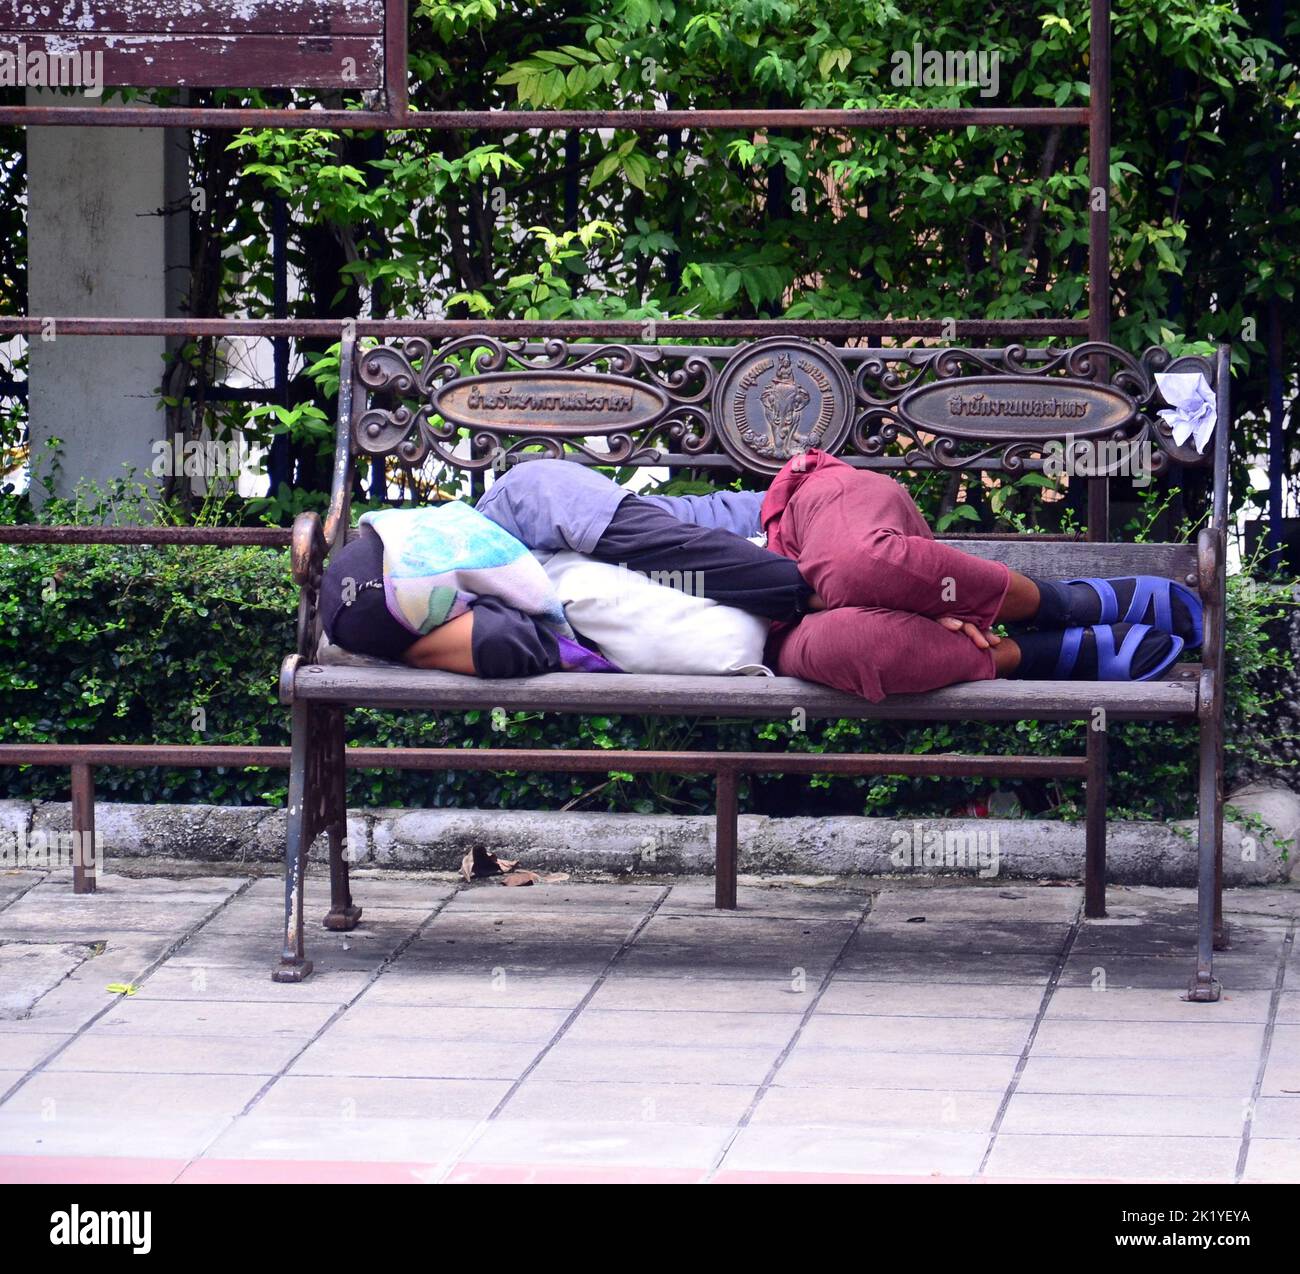 Eine Person schläft tagsüber auf einer Bank auf der Straße in Bangkok, Thailand, Südostasien. Dies ist ein regelmäßiger Anblick in Bangkok, wo die Unterkunft relativ teuer ist im Vergleich zu dem Mindestlohn von etwa $7 pro Tag. Stockfoto